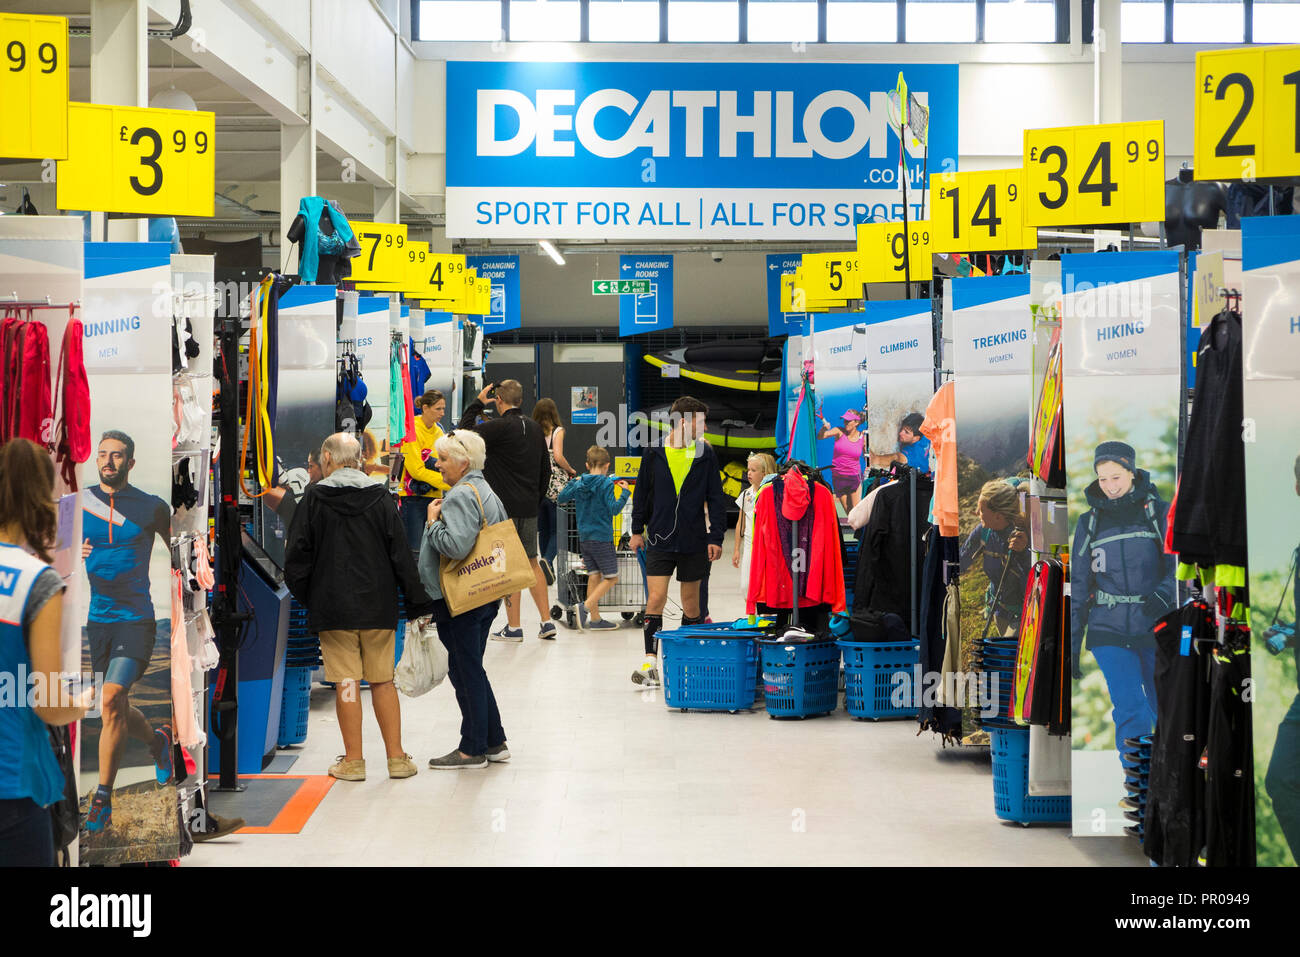 Tienda interior / interior del Decathlon deportes / equipamiento deportivo tienda / TIENDA / tienda en Guildford. Surrey. En el Reino Unido. (102) Foto de stock